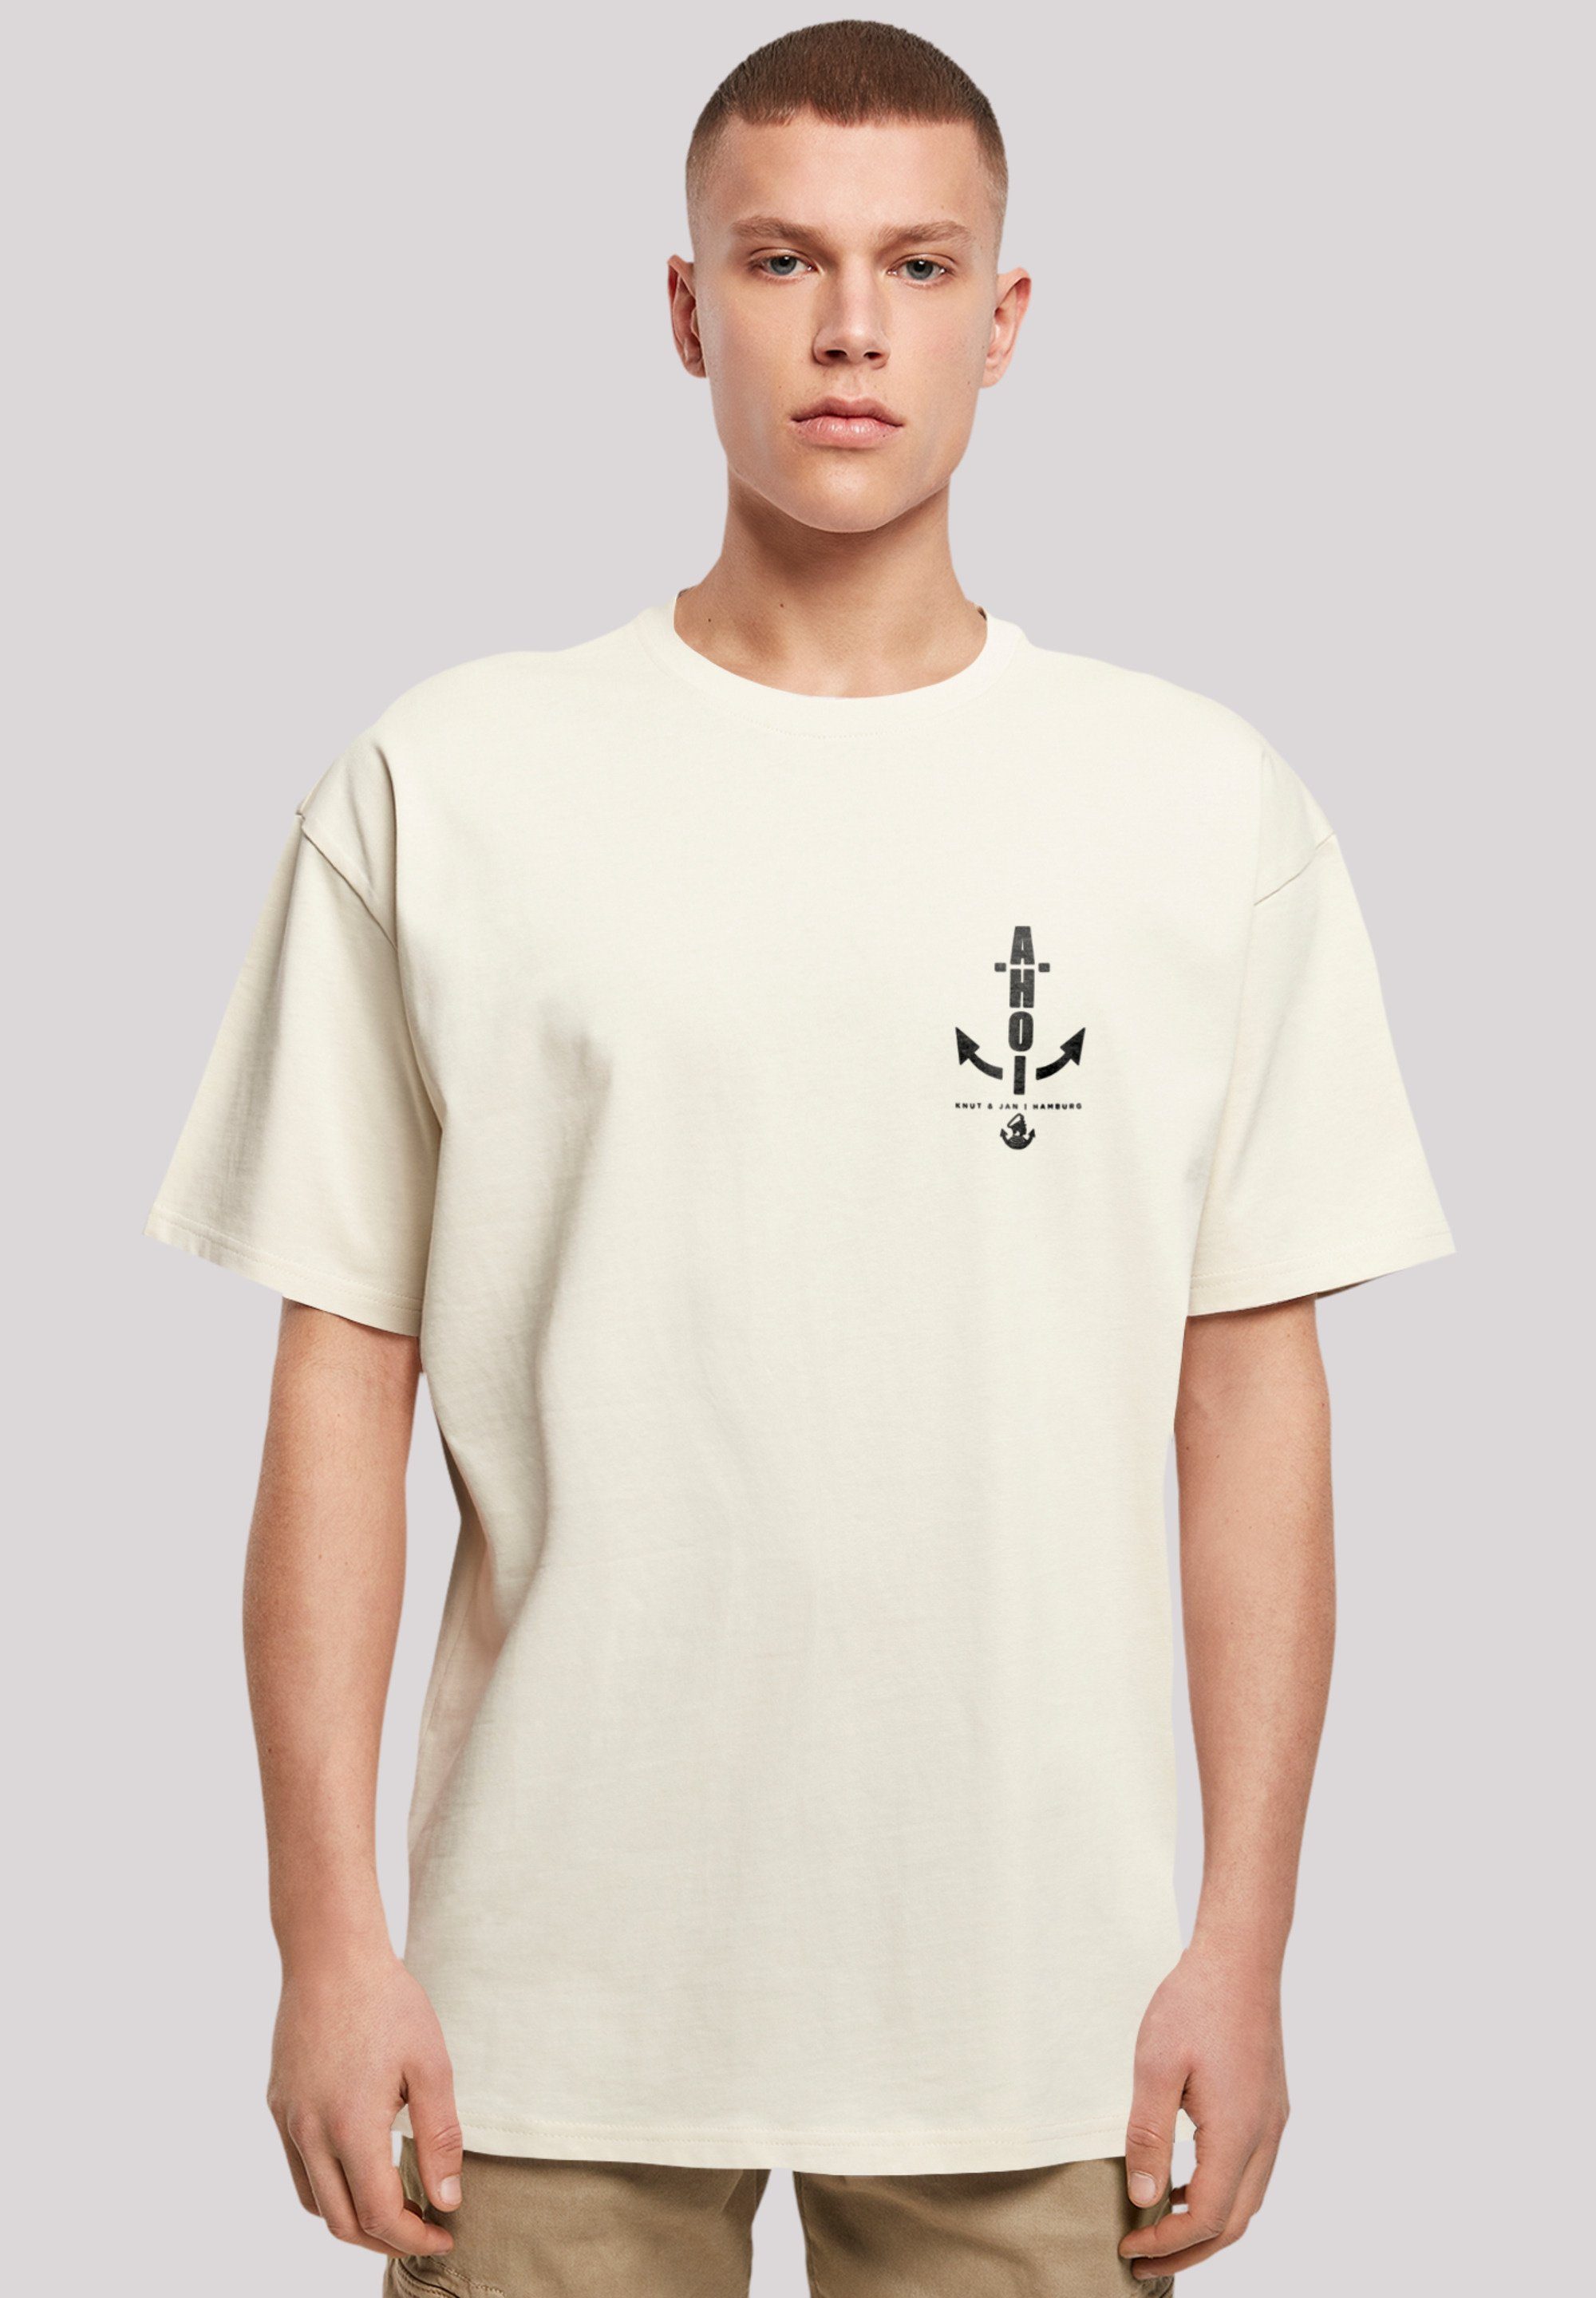 F4NT4STIC T-Shirt Ahoi Anker Knut & Jan Hamburg Print sand | T-Shirts